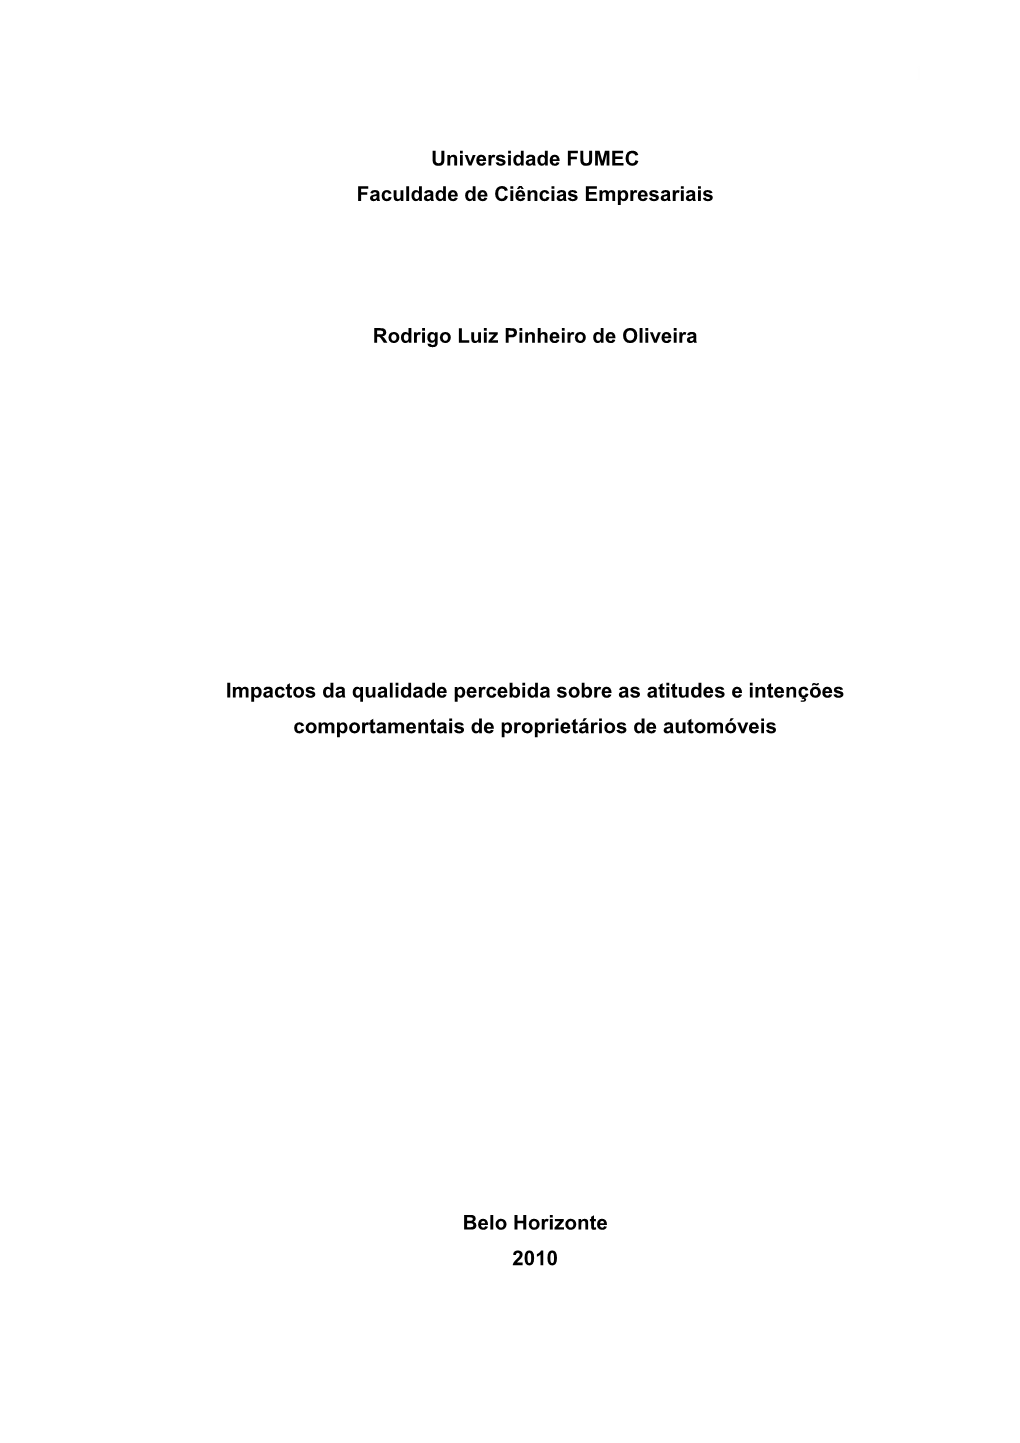 Dissertação Rodrigo Luiz Pinheiro